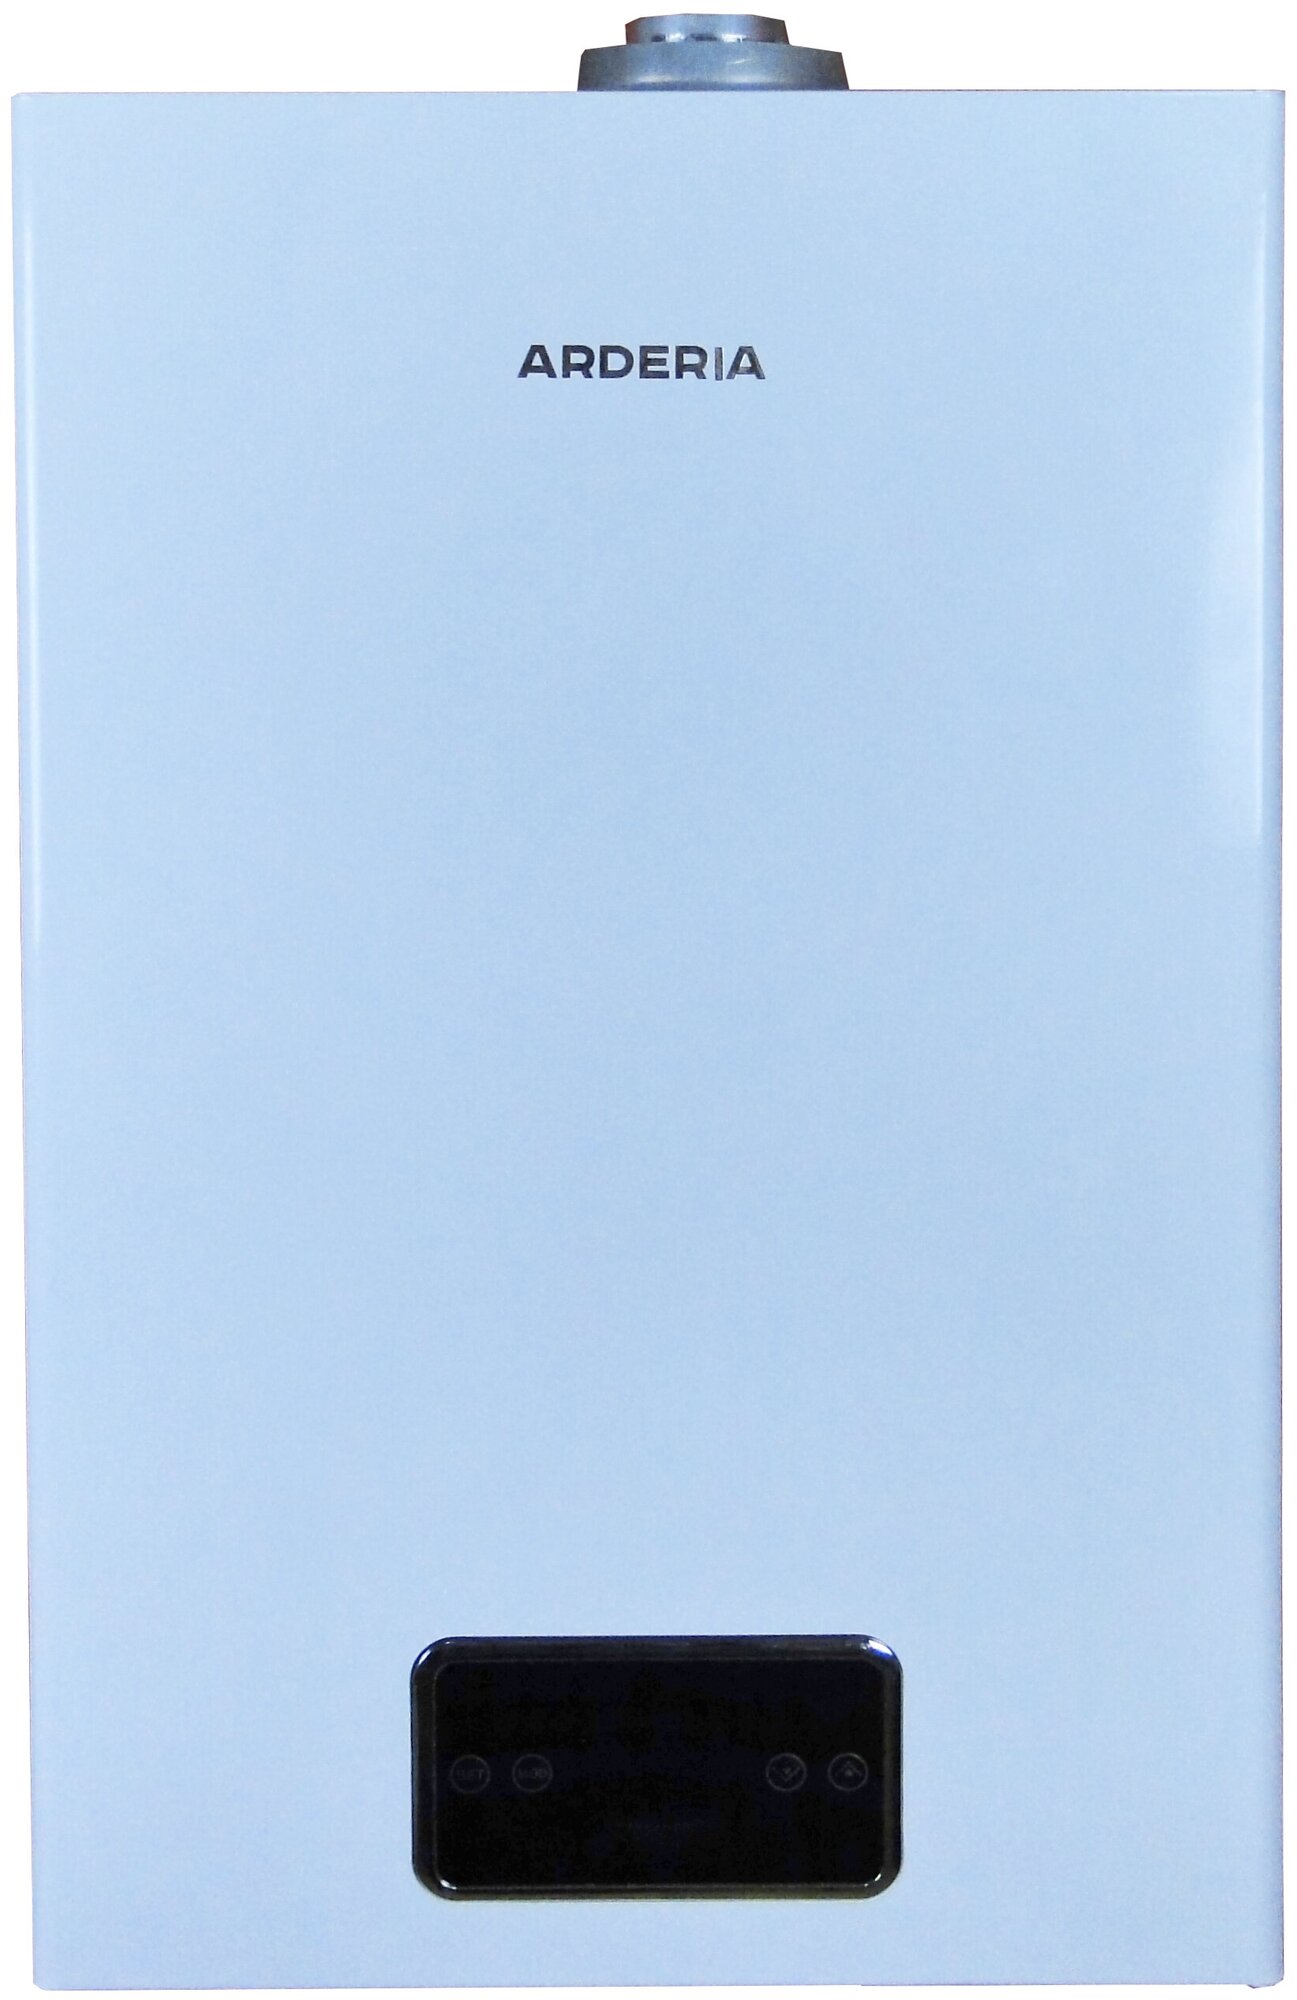 Котел газовый настенный Arderia D24 v3 отопительный / водогрейный / двухконтурный /раздельные теплообменники из меди / Ардерия